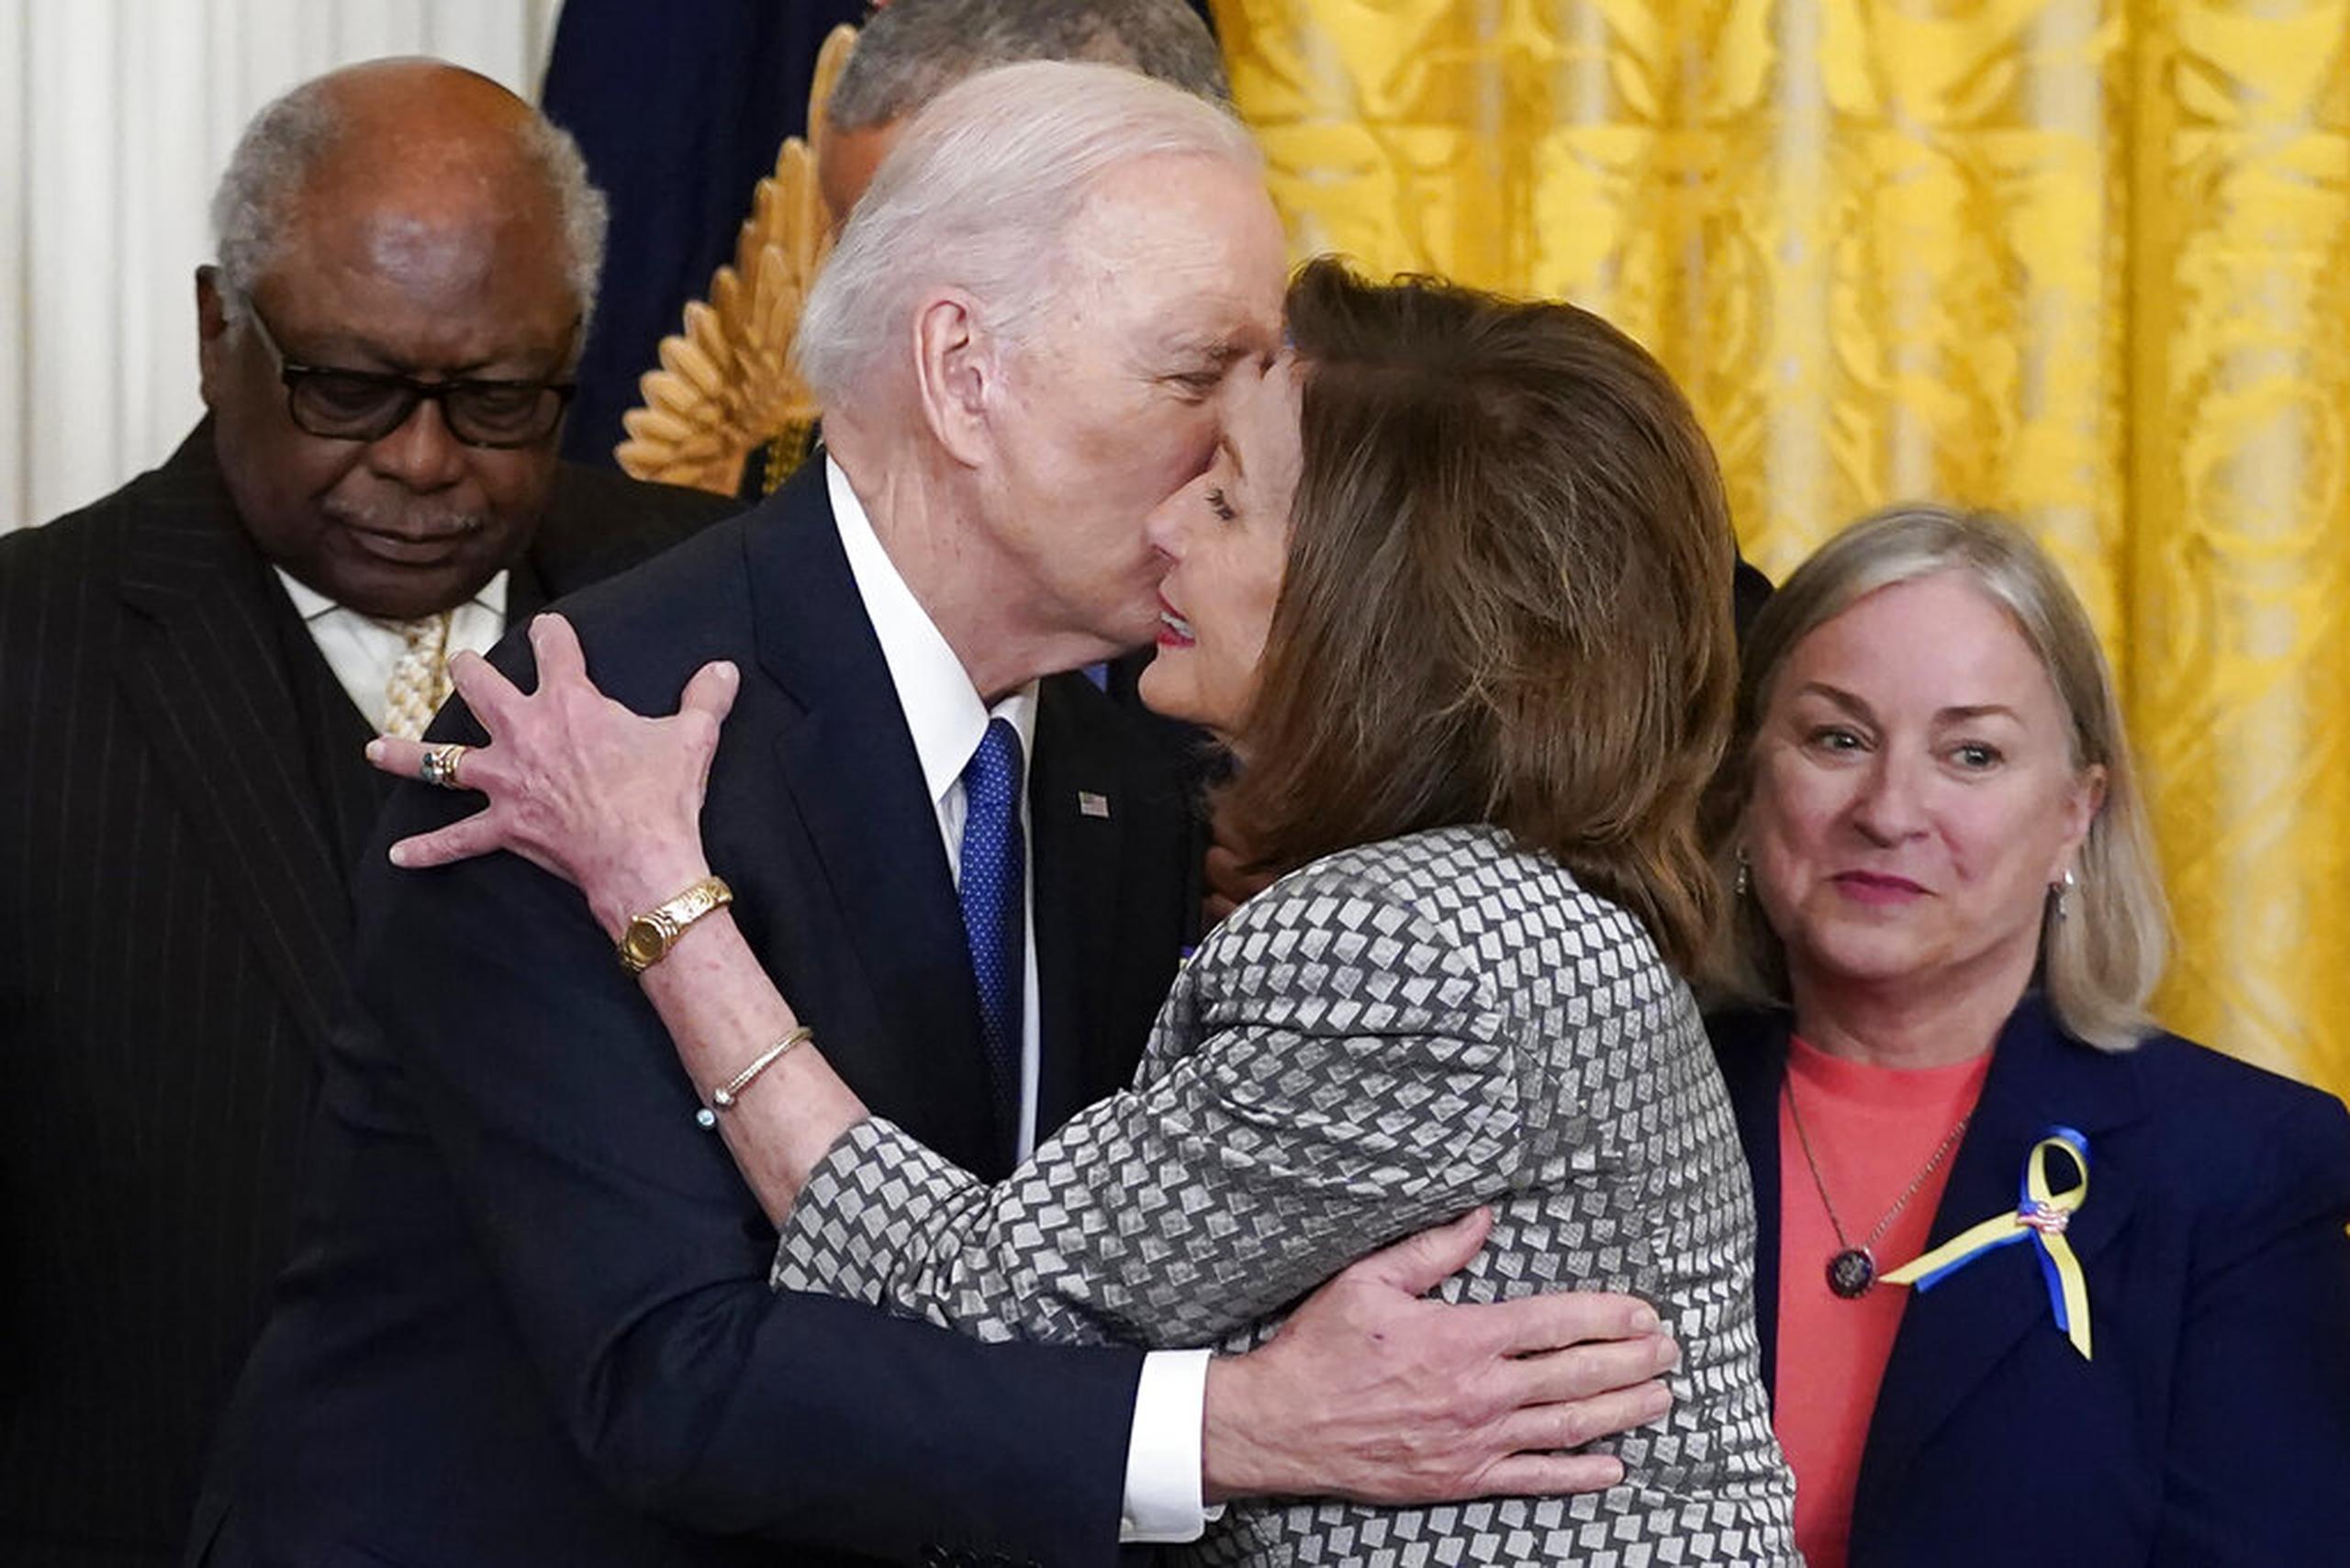 El presidente Joe Biden besa a la presidenta de la Cámara de Representantes, Nancy Pelosi, durante un evento de la Ley del Cuidado de Salud a Bajo Precio en el Salón Este de la Casa Blanca el 5 de abril de 2022.